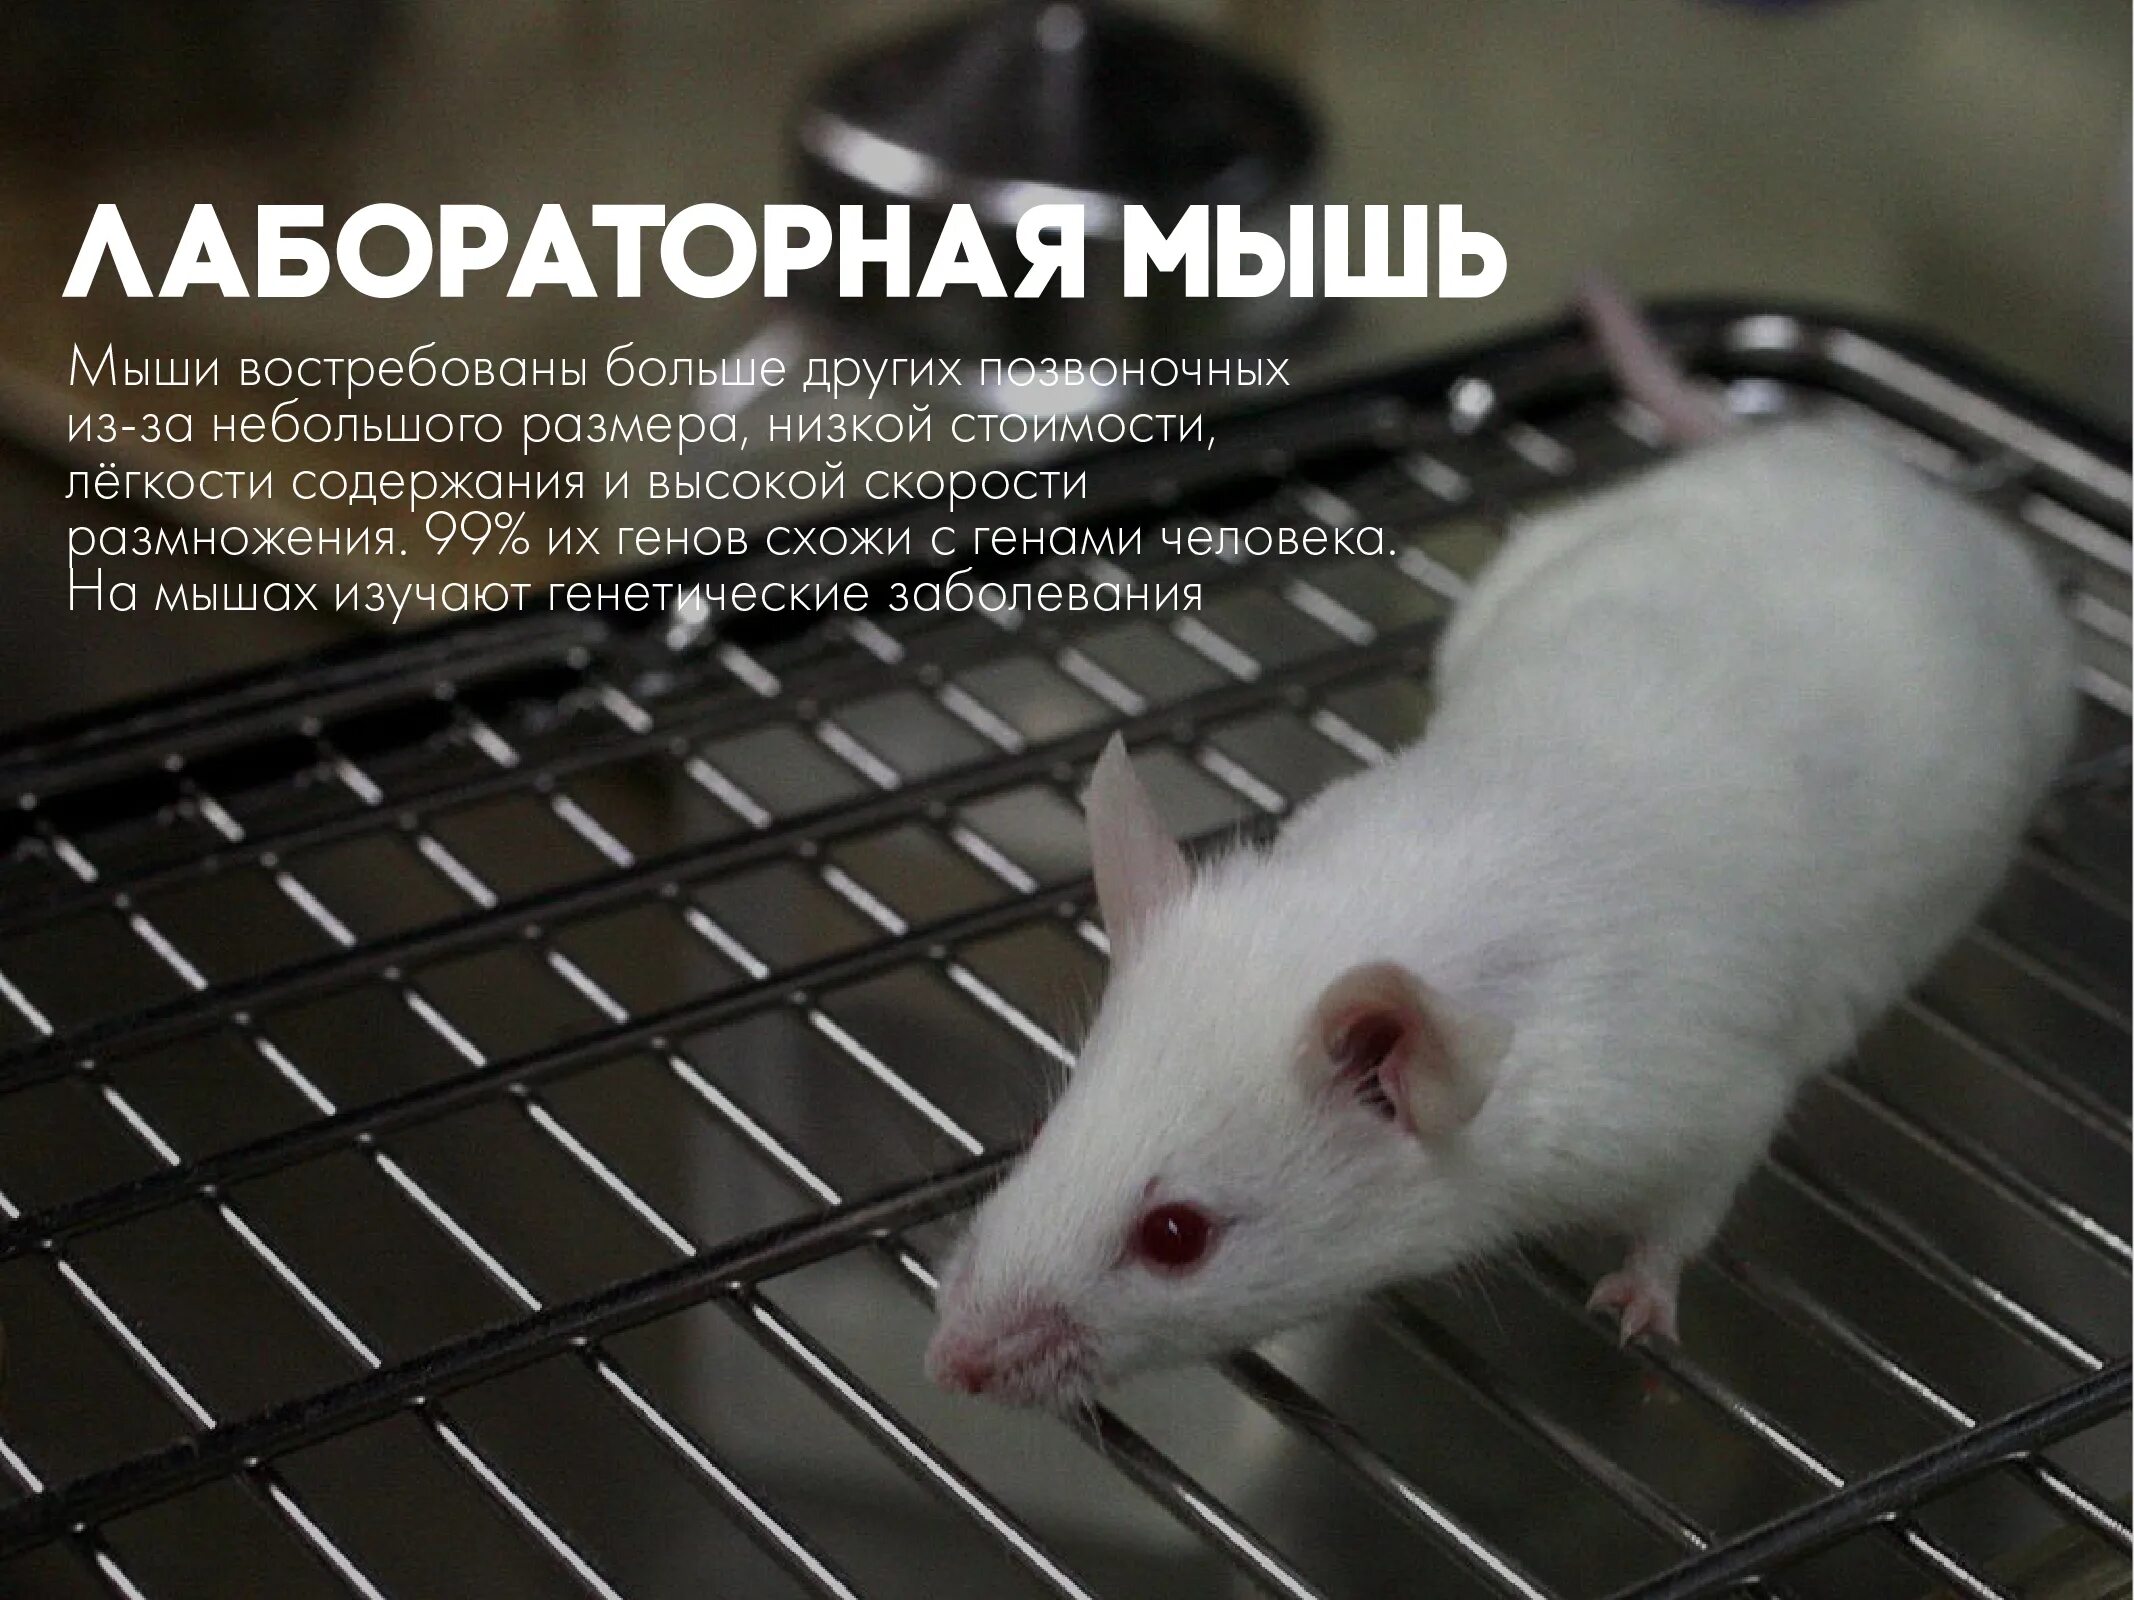 Зрение мыши. Экспериментальные животные. Белые лабораторные мыши. Животные в лаборатории. Мышь белая фото.